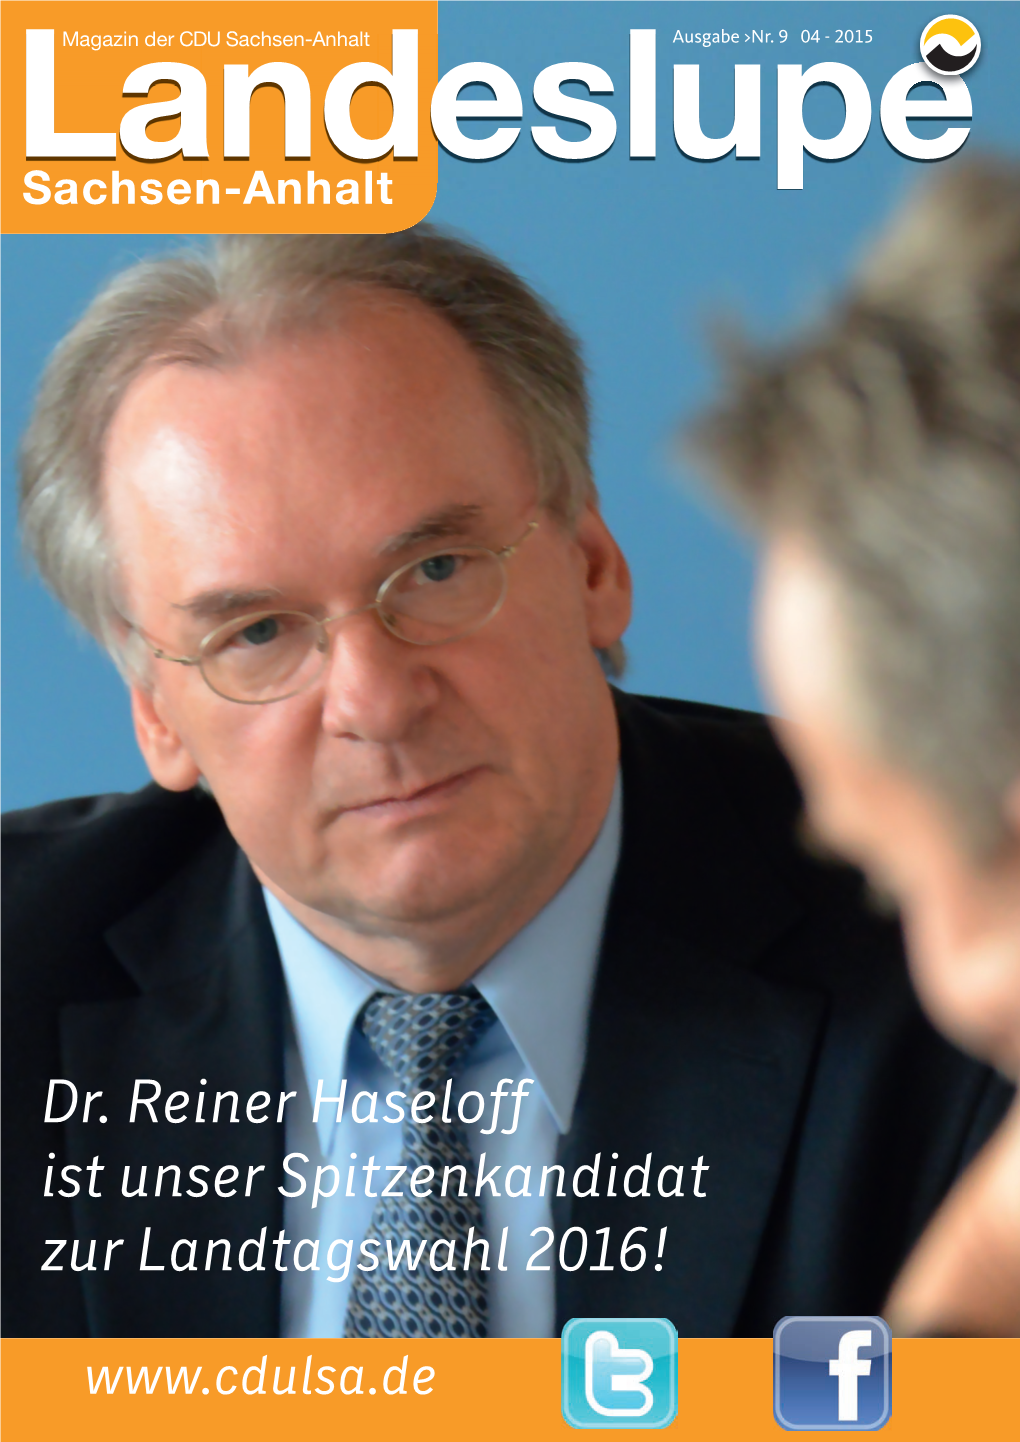 Dr. Reiner Haseloff Ist Unser Spitzenkandidat Zur Landtagswahl 2016!